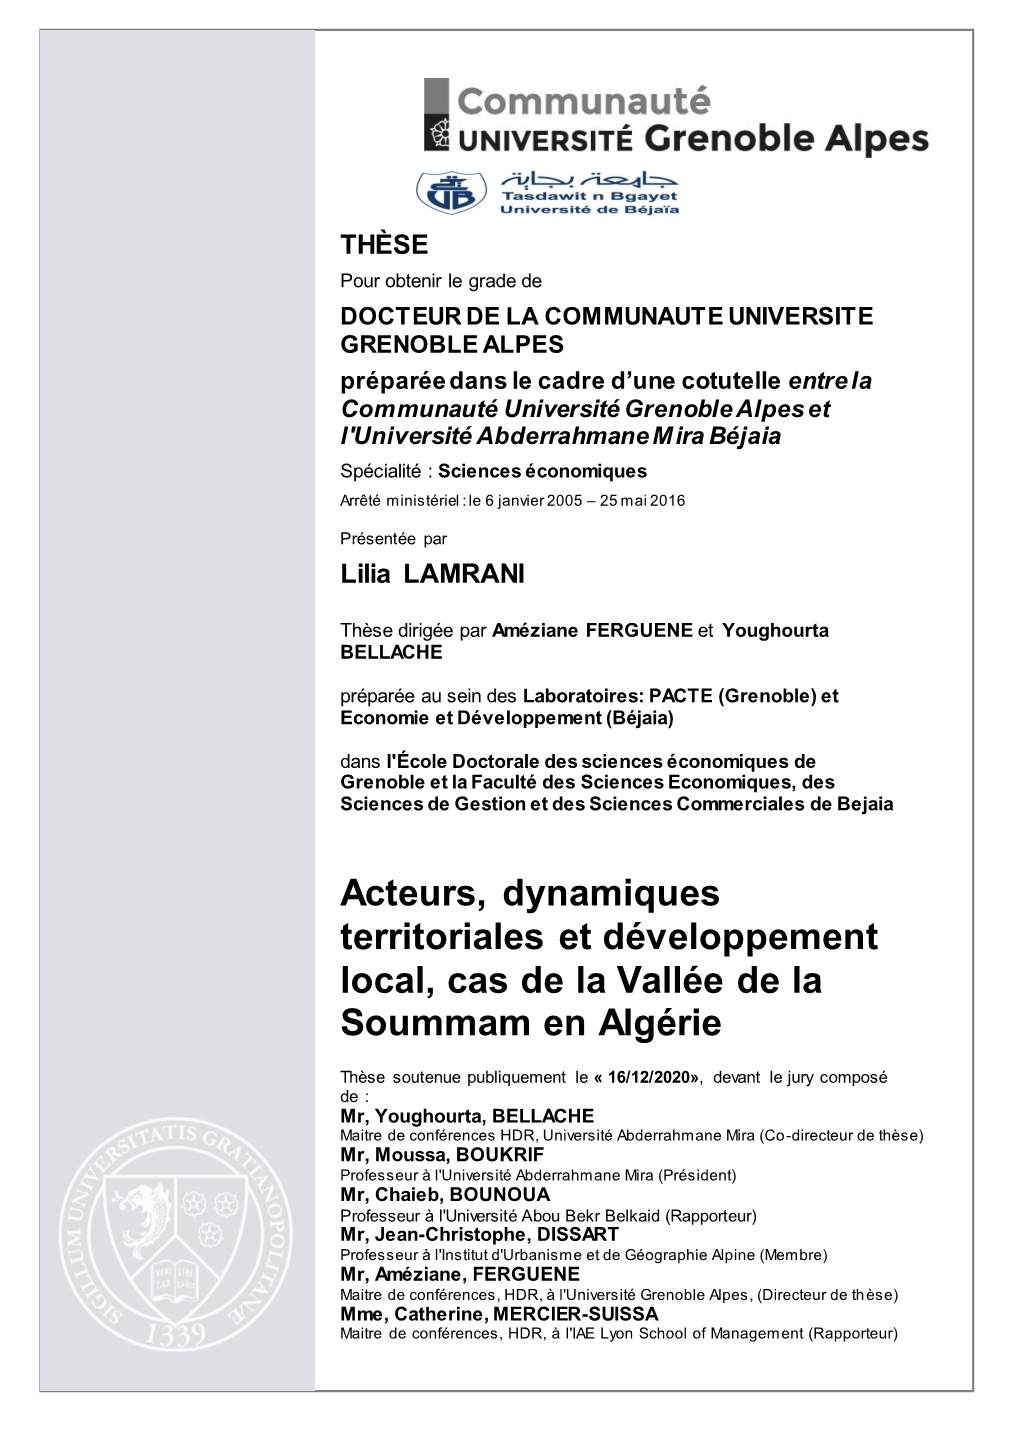 Acteurs, Dynamiques Territoriales Et Développement Local, Cas De La Vallée De La Soummam En Algérie